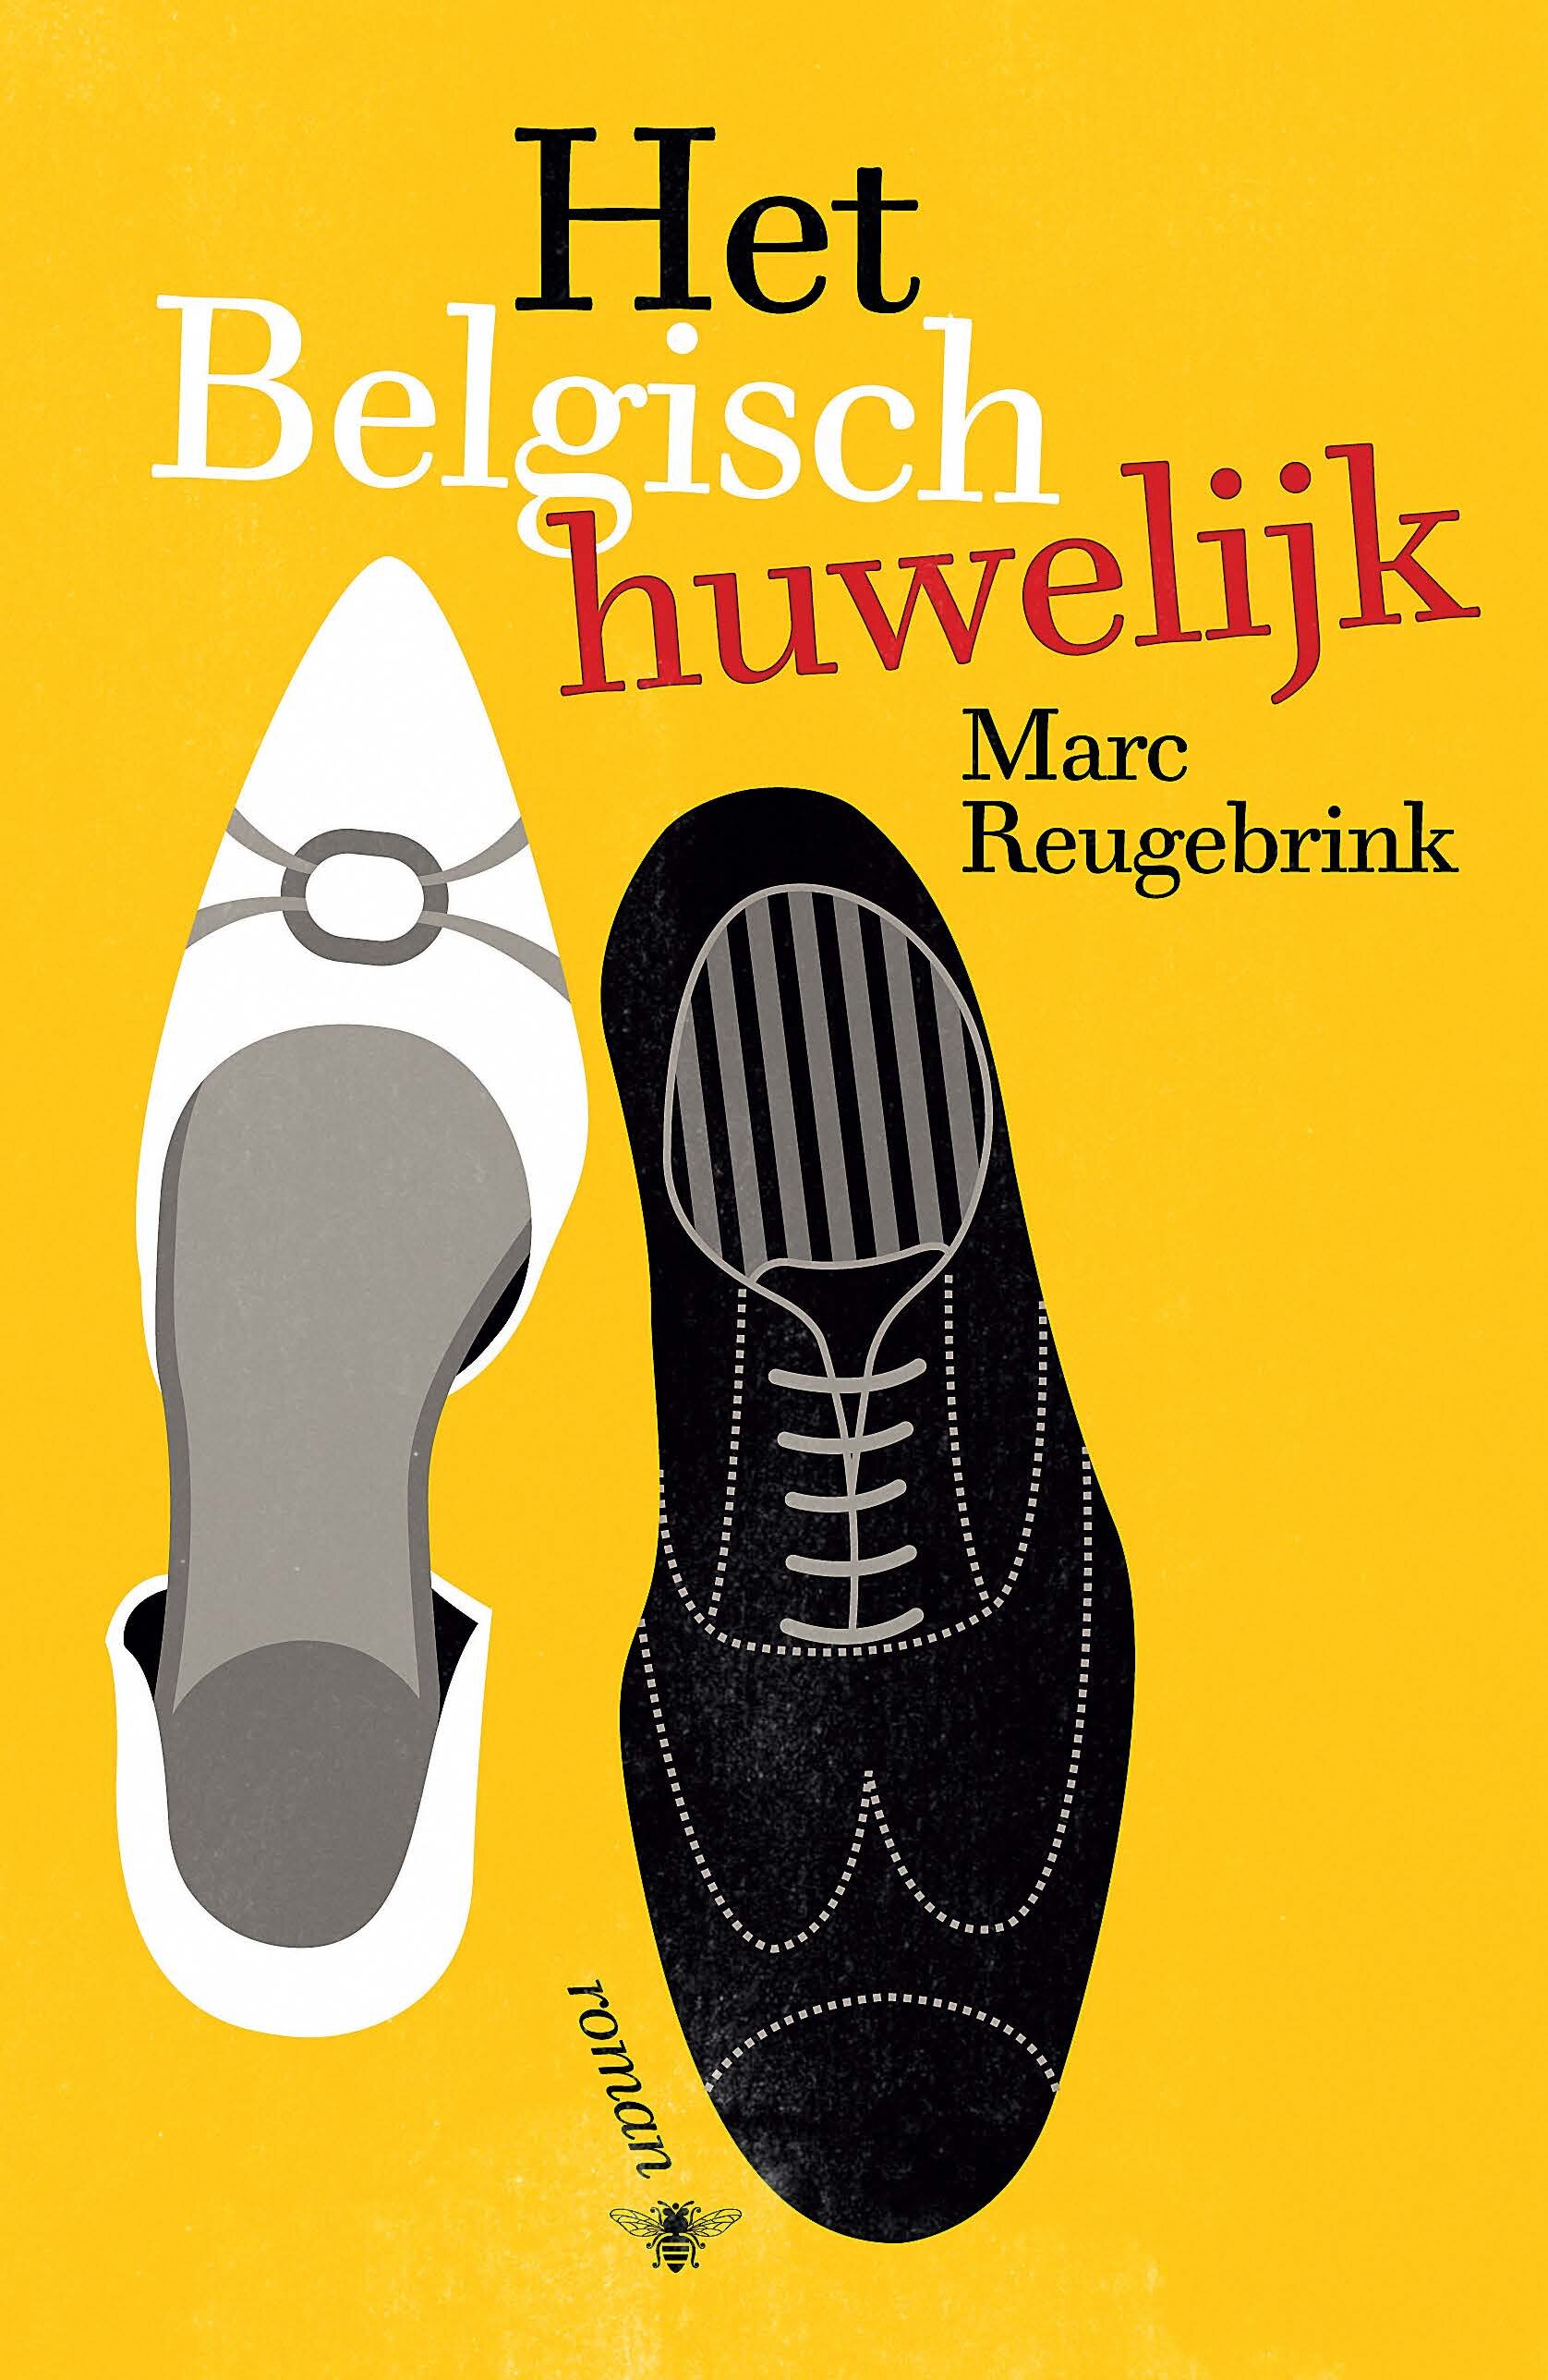 Twitteraccount voor Het Belgisch Huwelijk. Deze nieuwe roman van Marc Reugebrink ligt 28 maart in de winkel. Houd dit account op de hoogte voor updates!